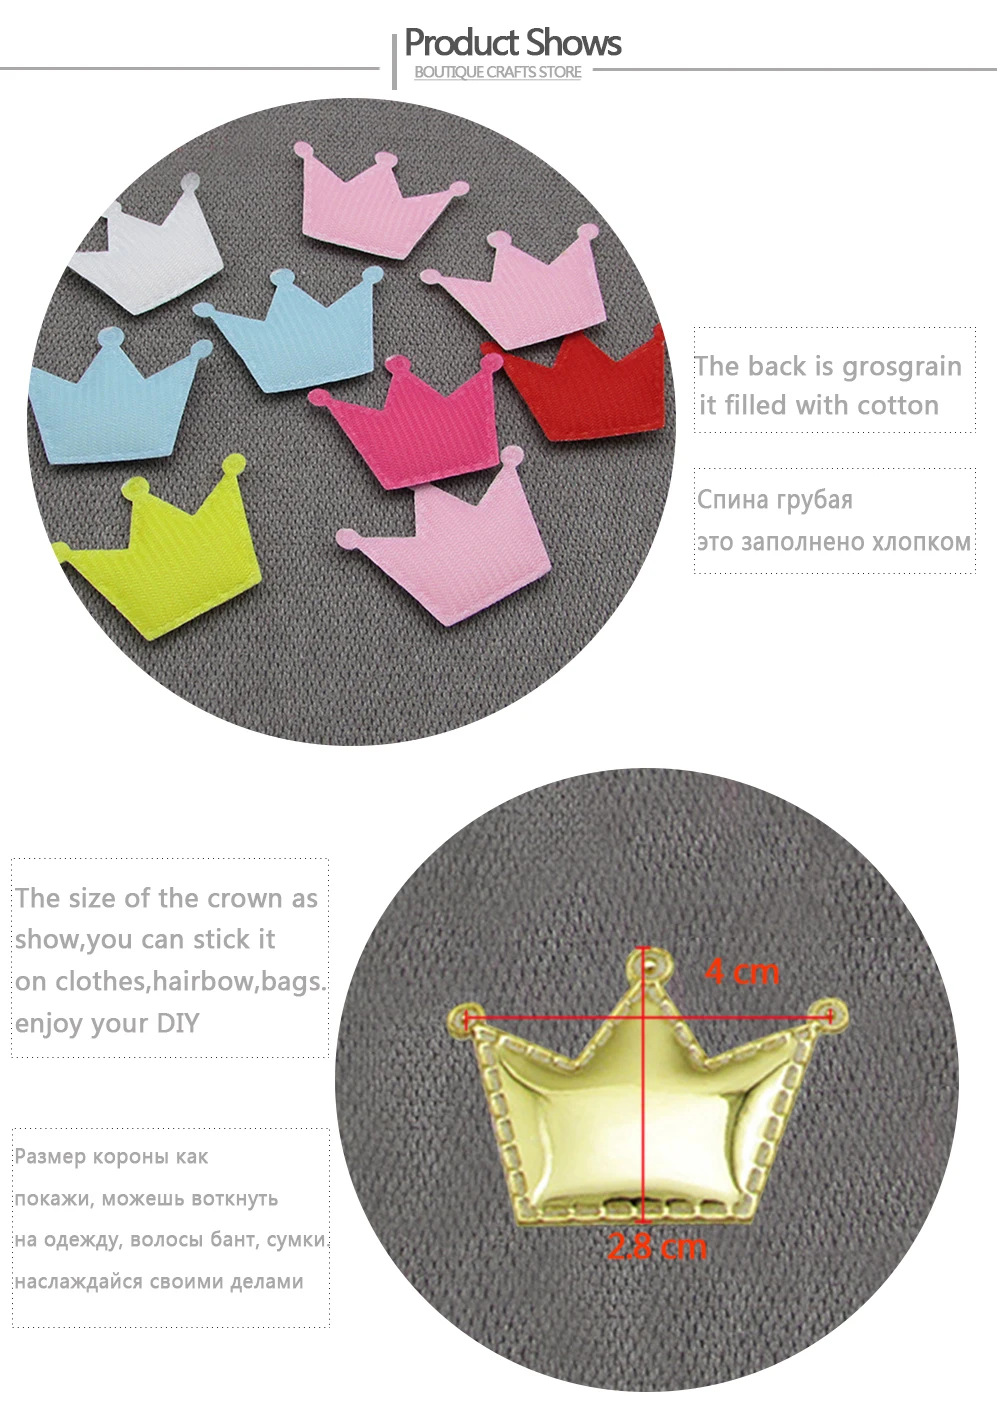 QIBU 50 шт. PU короны для рукоделия зеркальные Светоотражающие нашивки для одежды сумка ручной работы одежда украшения для самодельного изготовления поставки